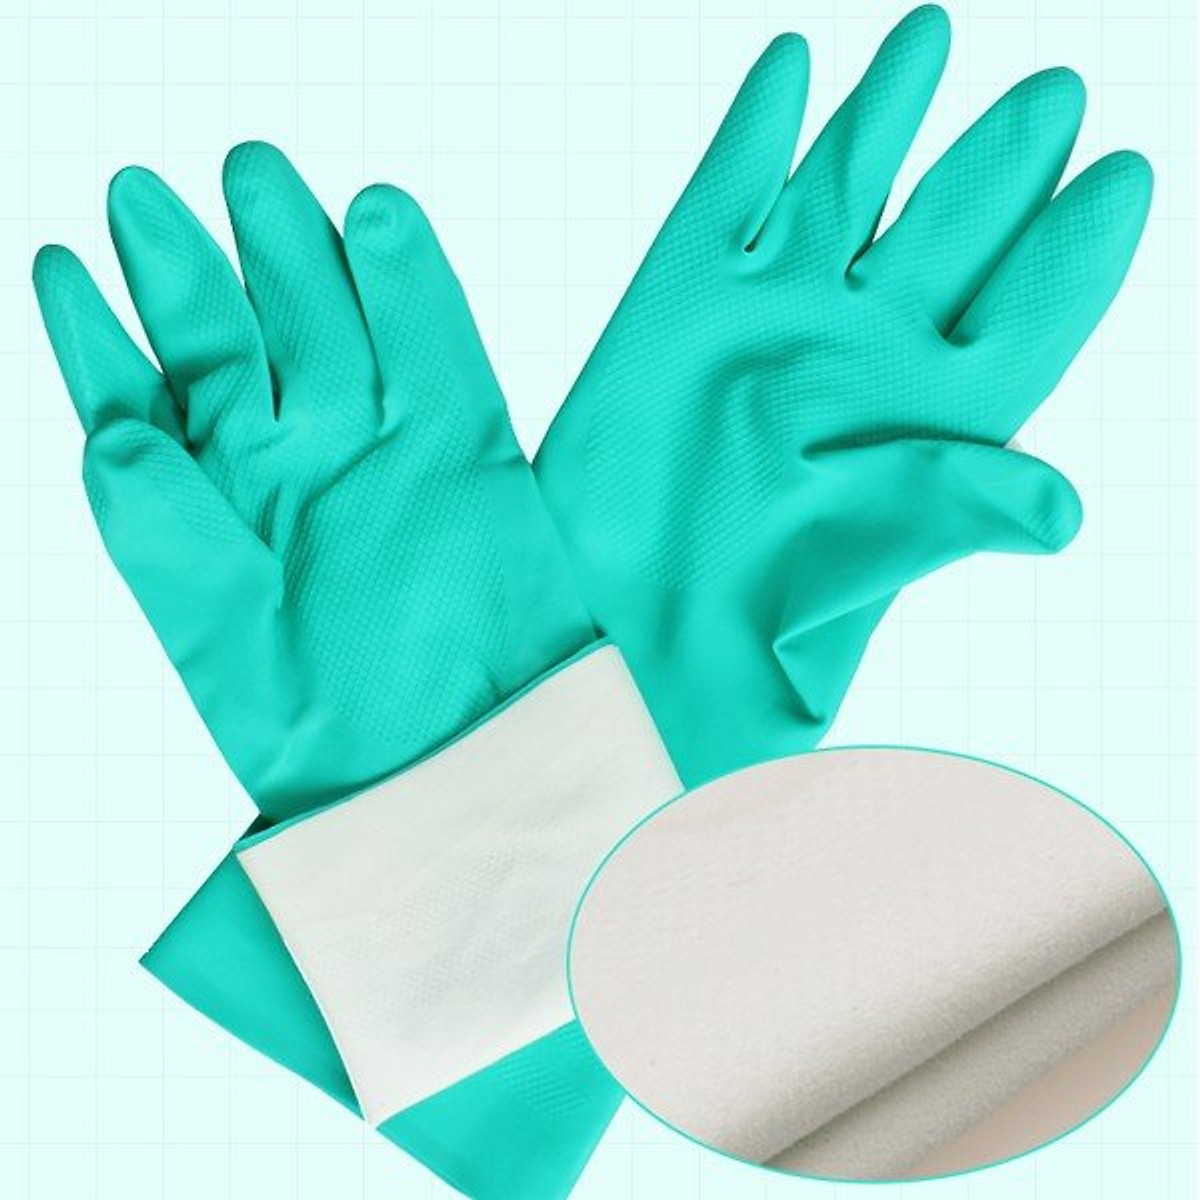 găng tay chống hóa chất ansell